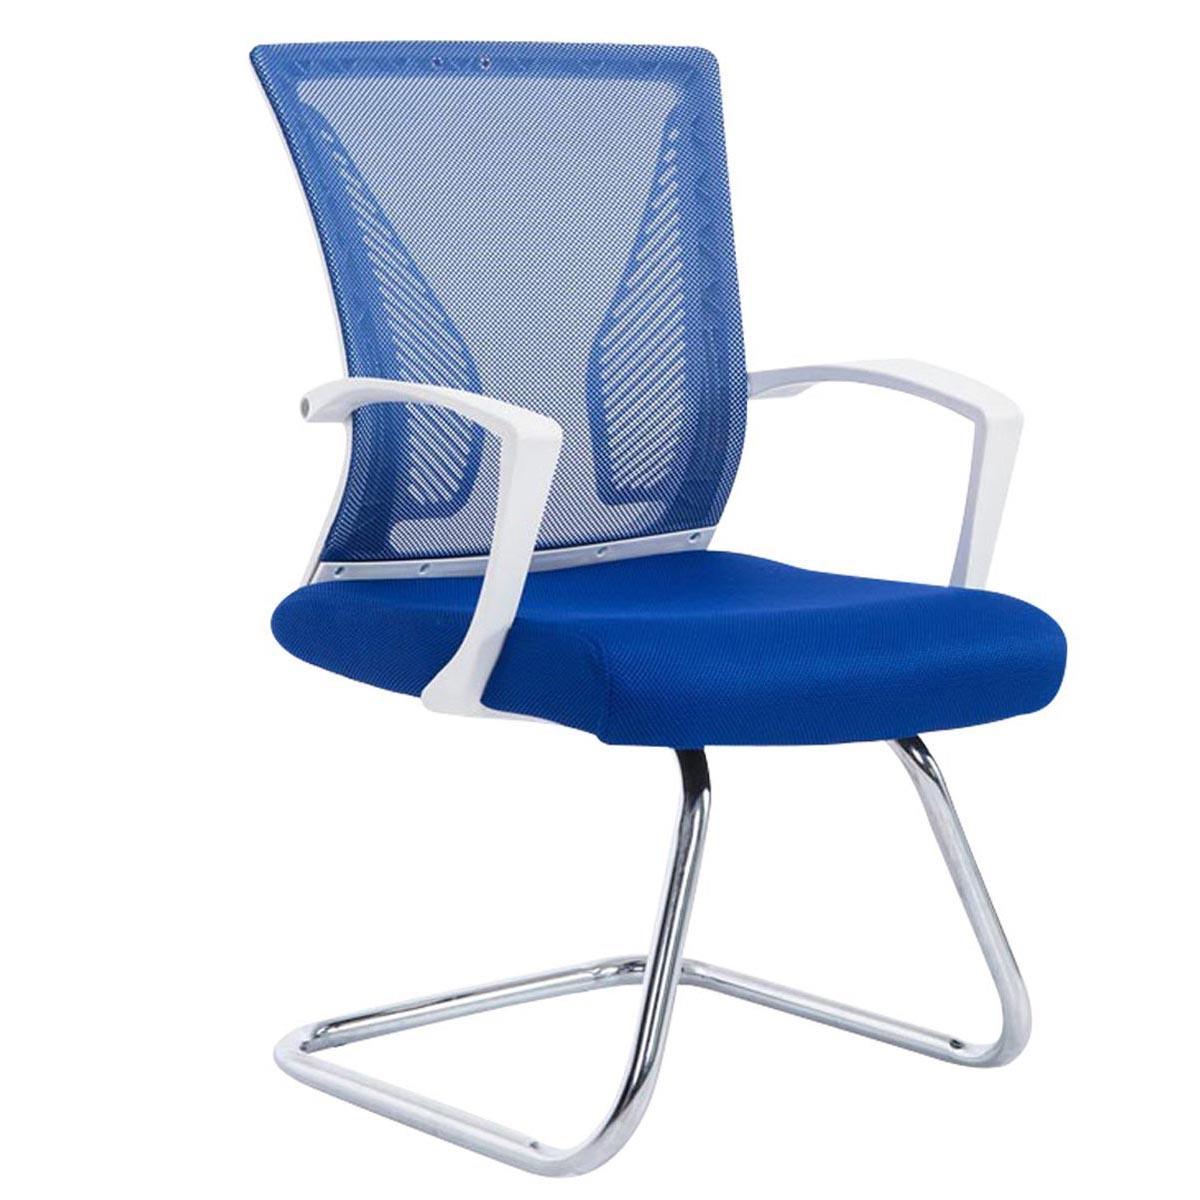 Chaise visiteur CUBA V, Structure Métallique, en Maille Respirable, Bleu